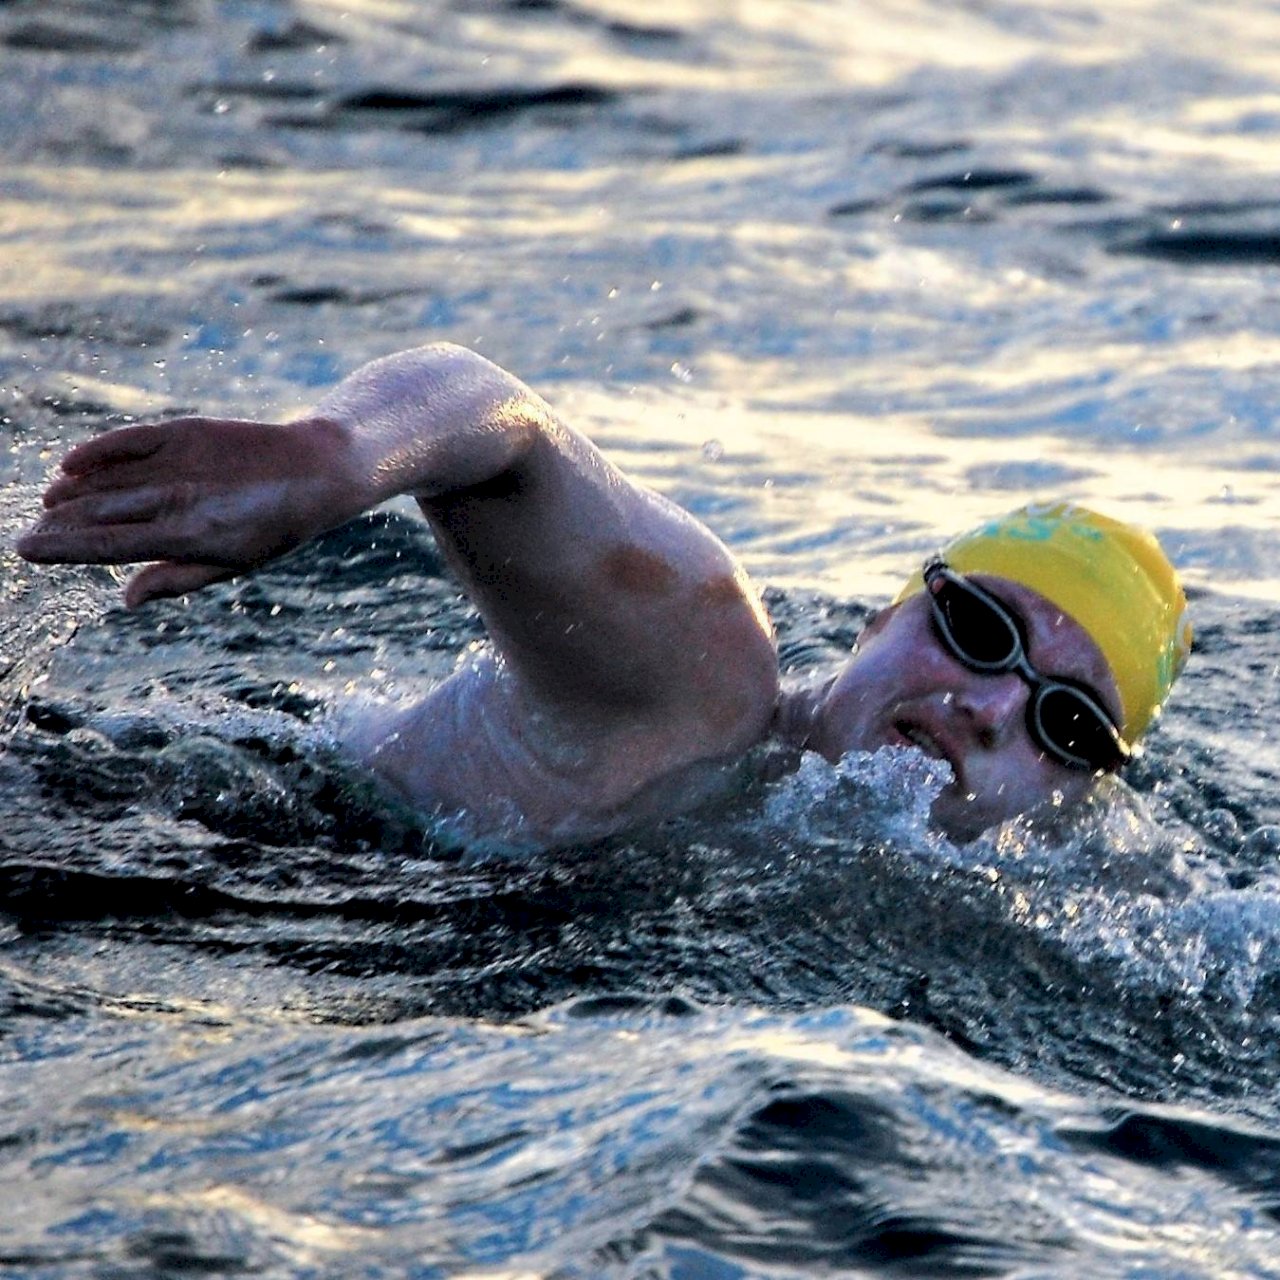 史上第一人 美國泳將4次橫渡英吉利海峽無休息